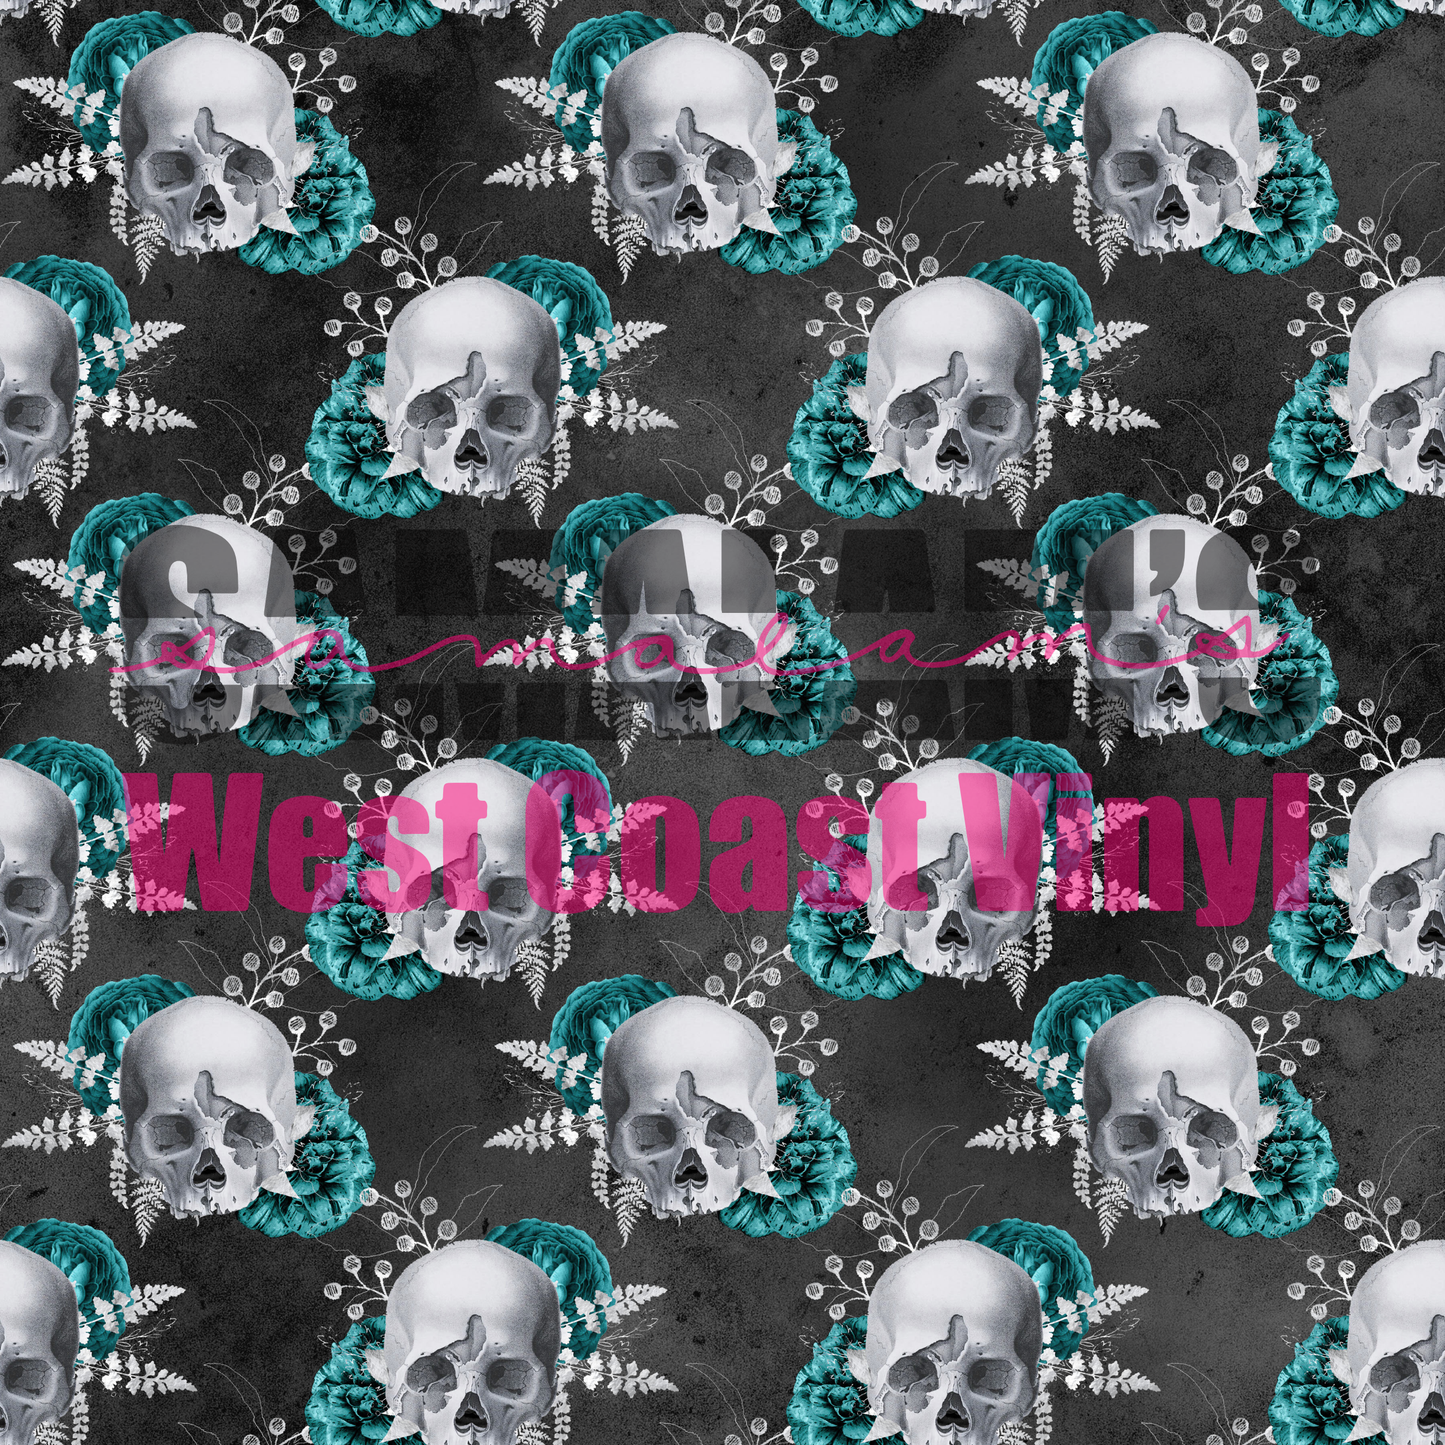 Skulls - Pack 7 (Seamless)